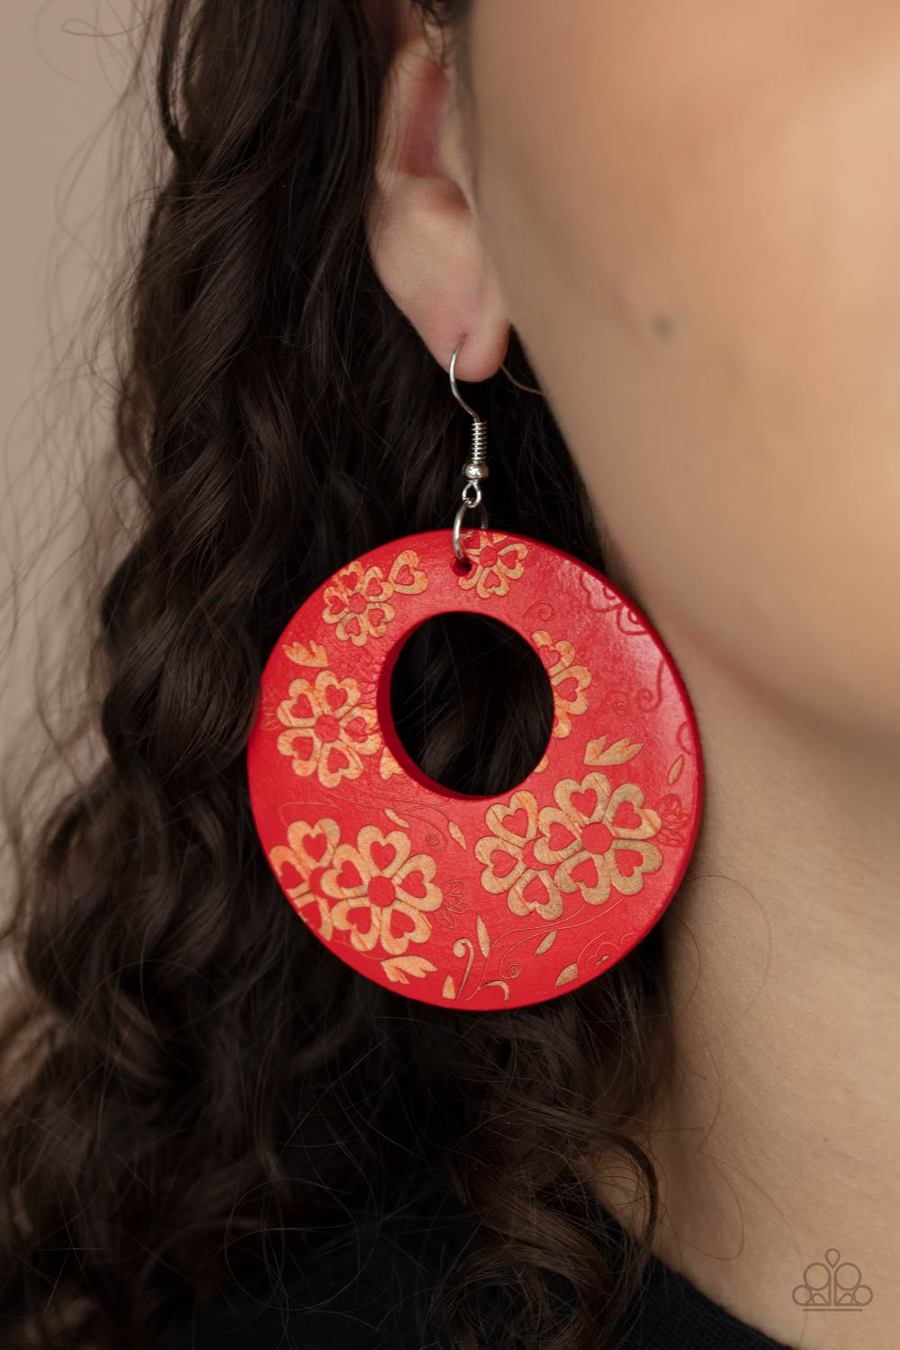 Galapagos Garden Party Red

Earrings - Daria's Blings N Things